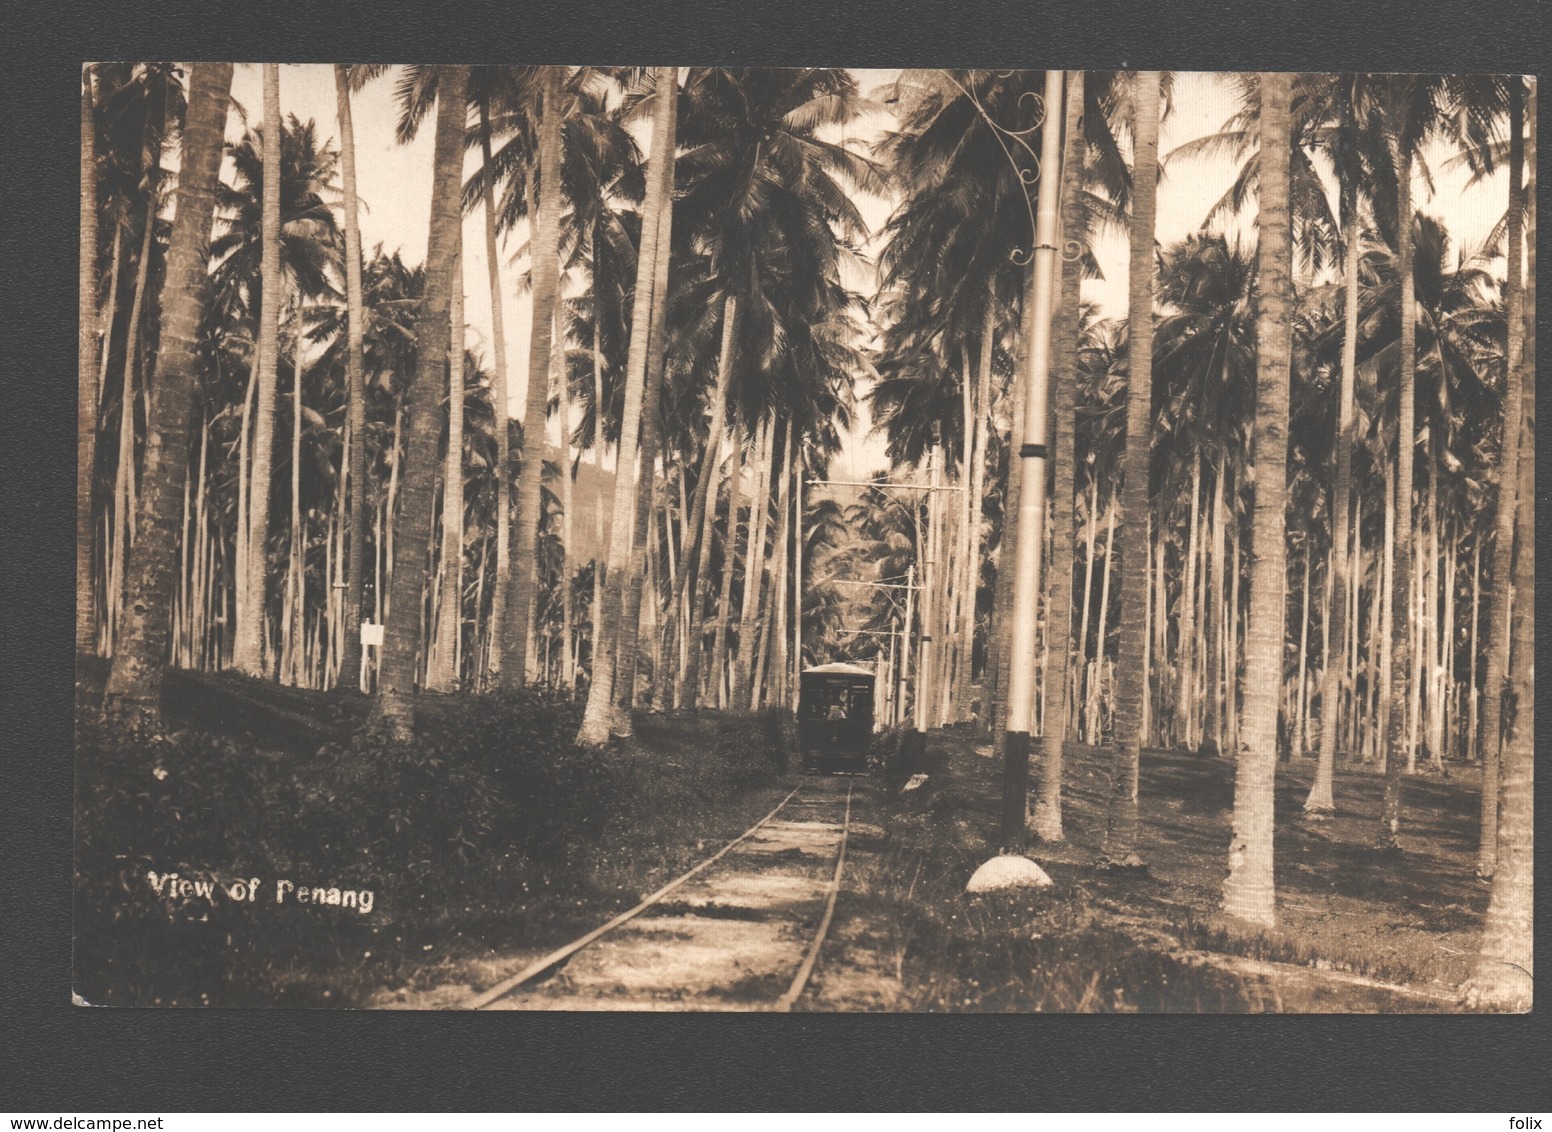 Penang / Pulau Pinang - View Of Penang - Photo Card - Train / Trein / Zug - Chemin De Fer / Eisenbahn / Railway - Malaysia